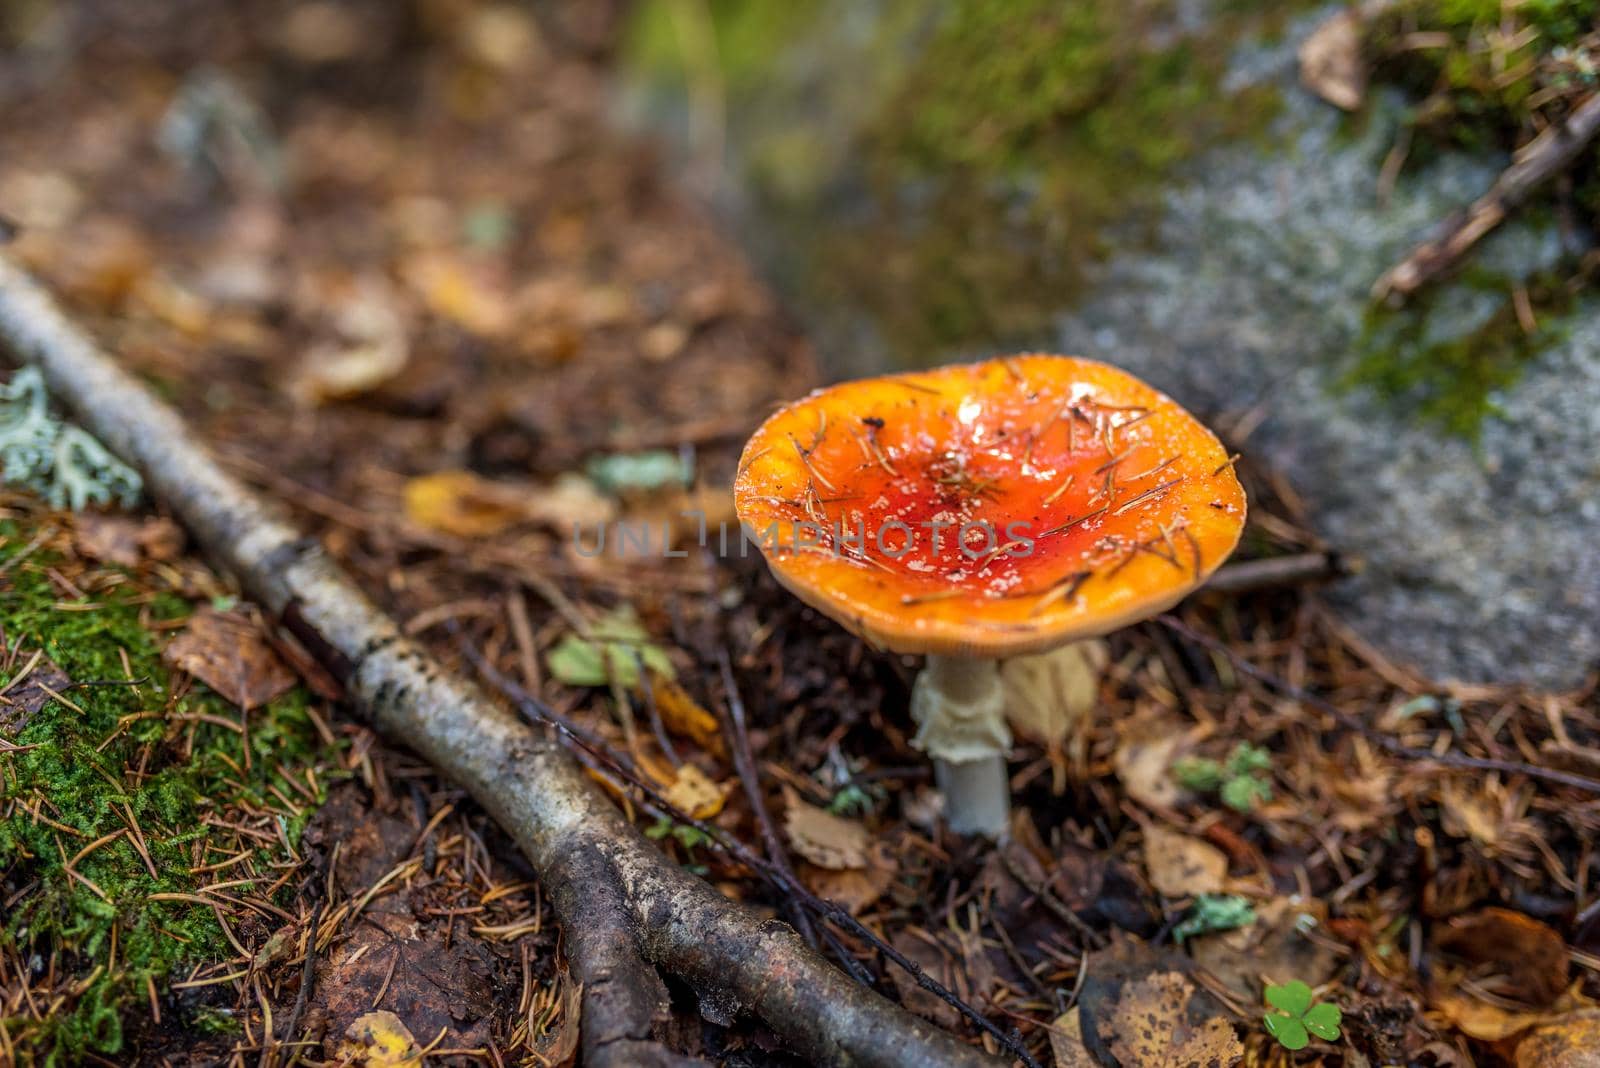 Poisonous mushroom Amanita,top view in autumn.